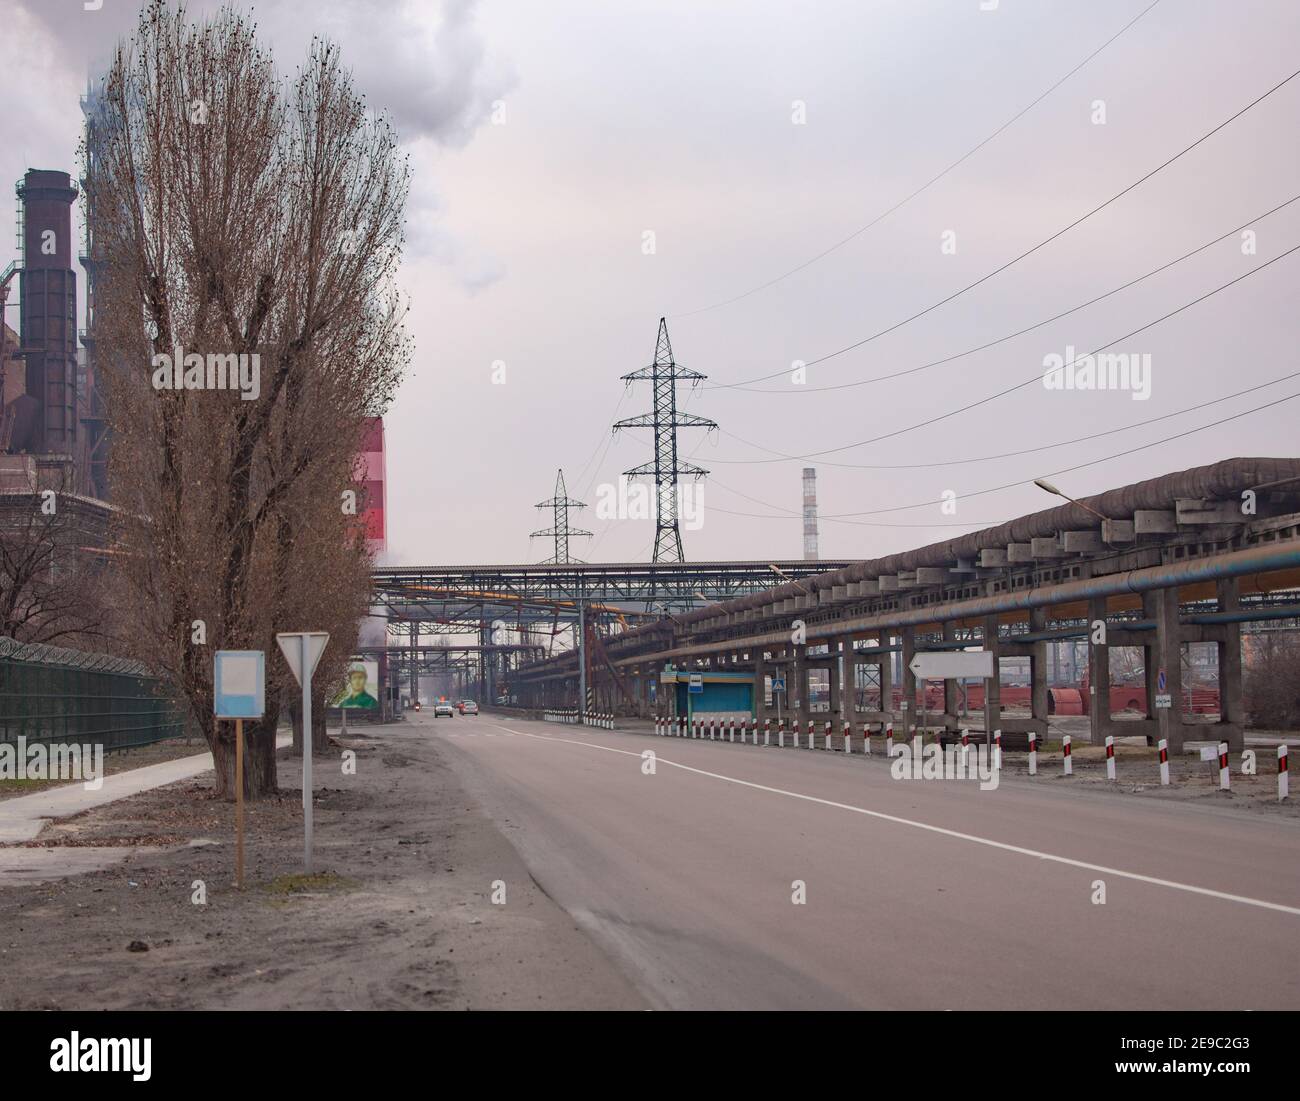 Una strada su un grande sito industriale. Tubazioni, linee elettriche. Foto Stock